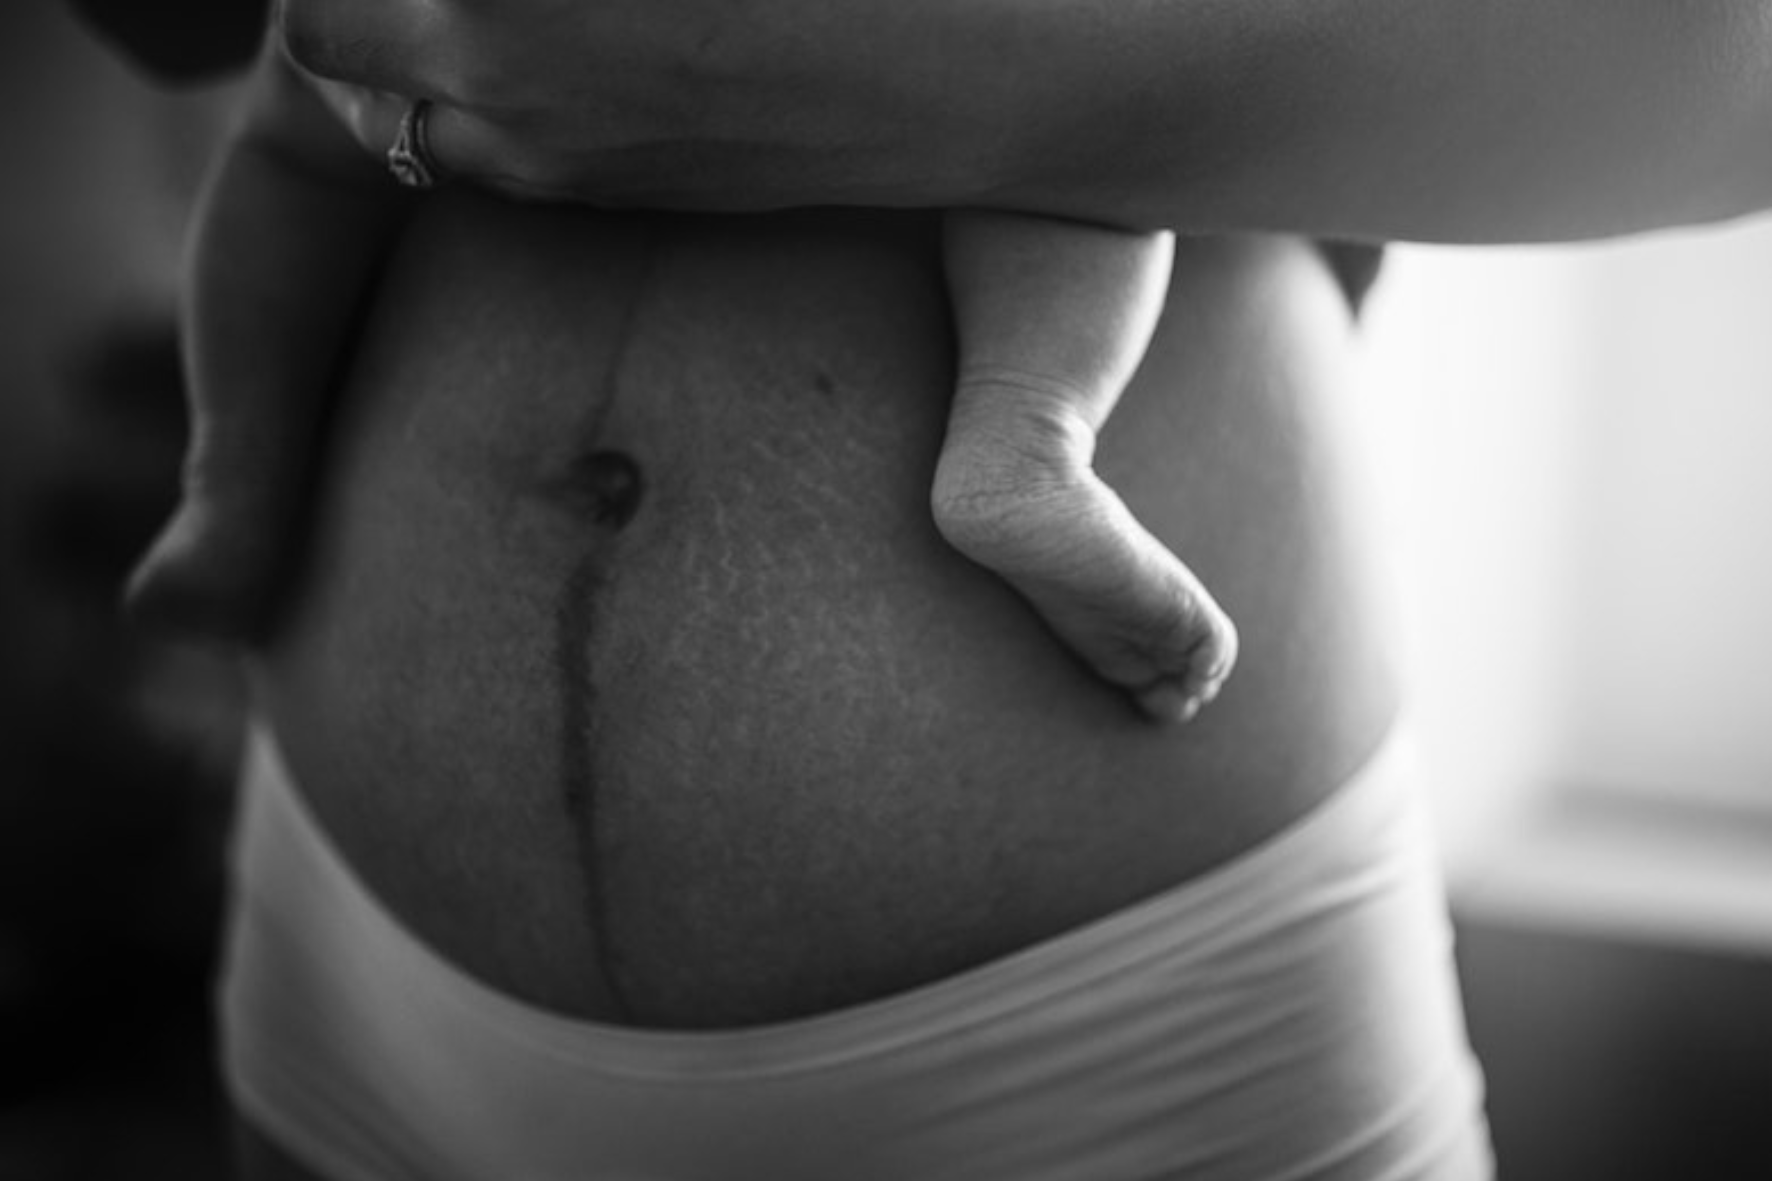 Le Journal De Ta Vie  RACONTE-MOI MAMAN Journal de grossesse et de  naissance